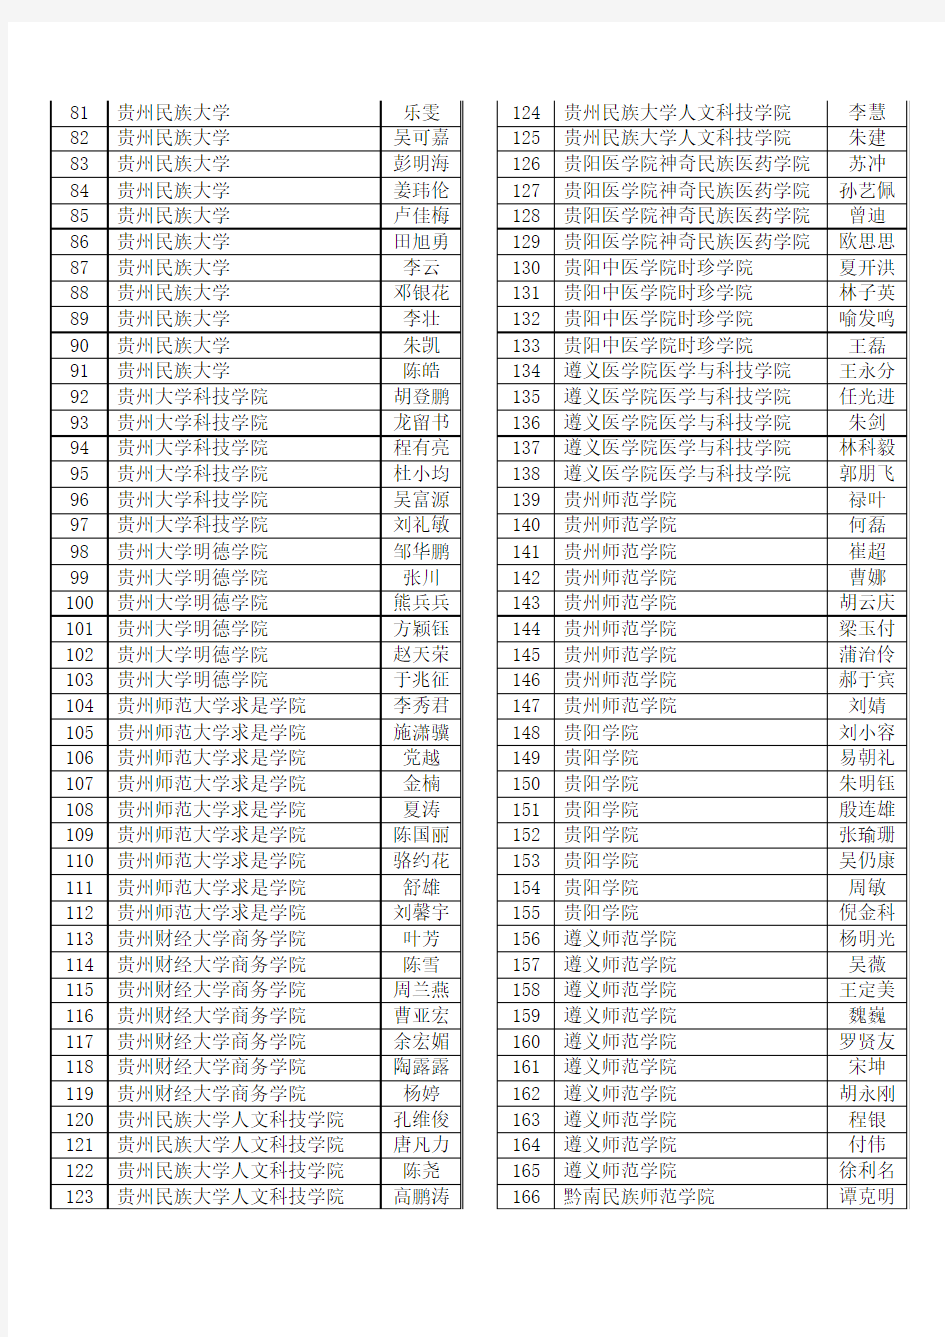 贵州省普通高校2012年优秀学生干部名单